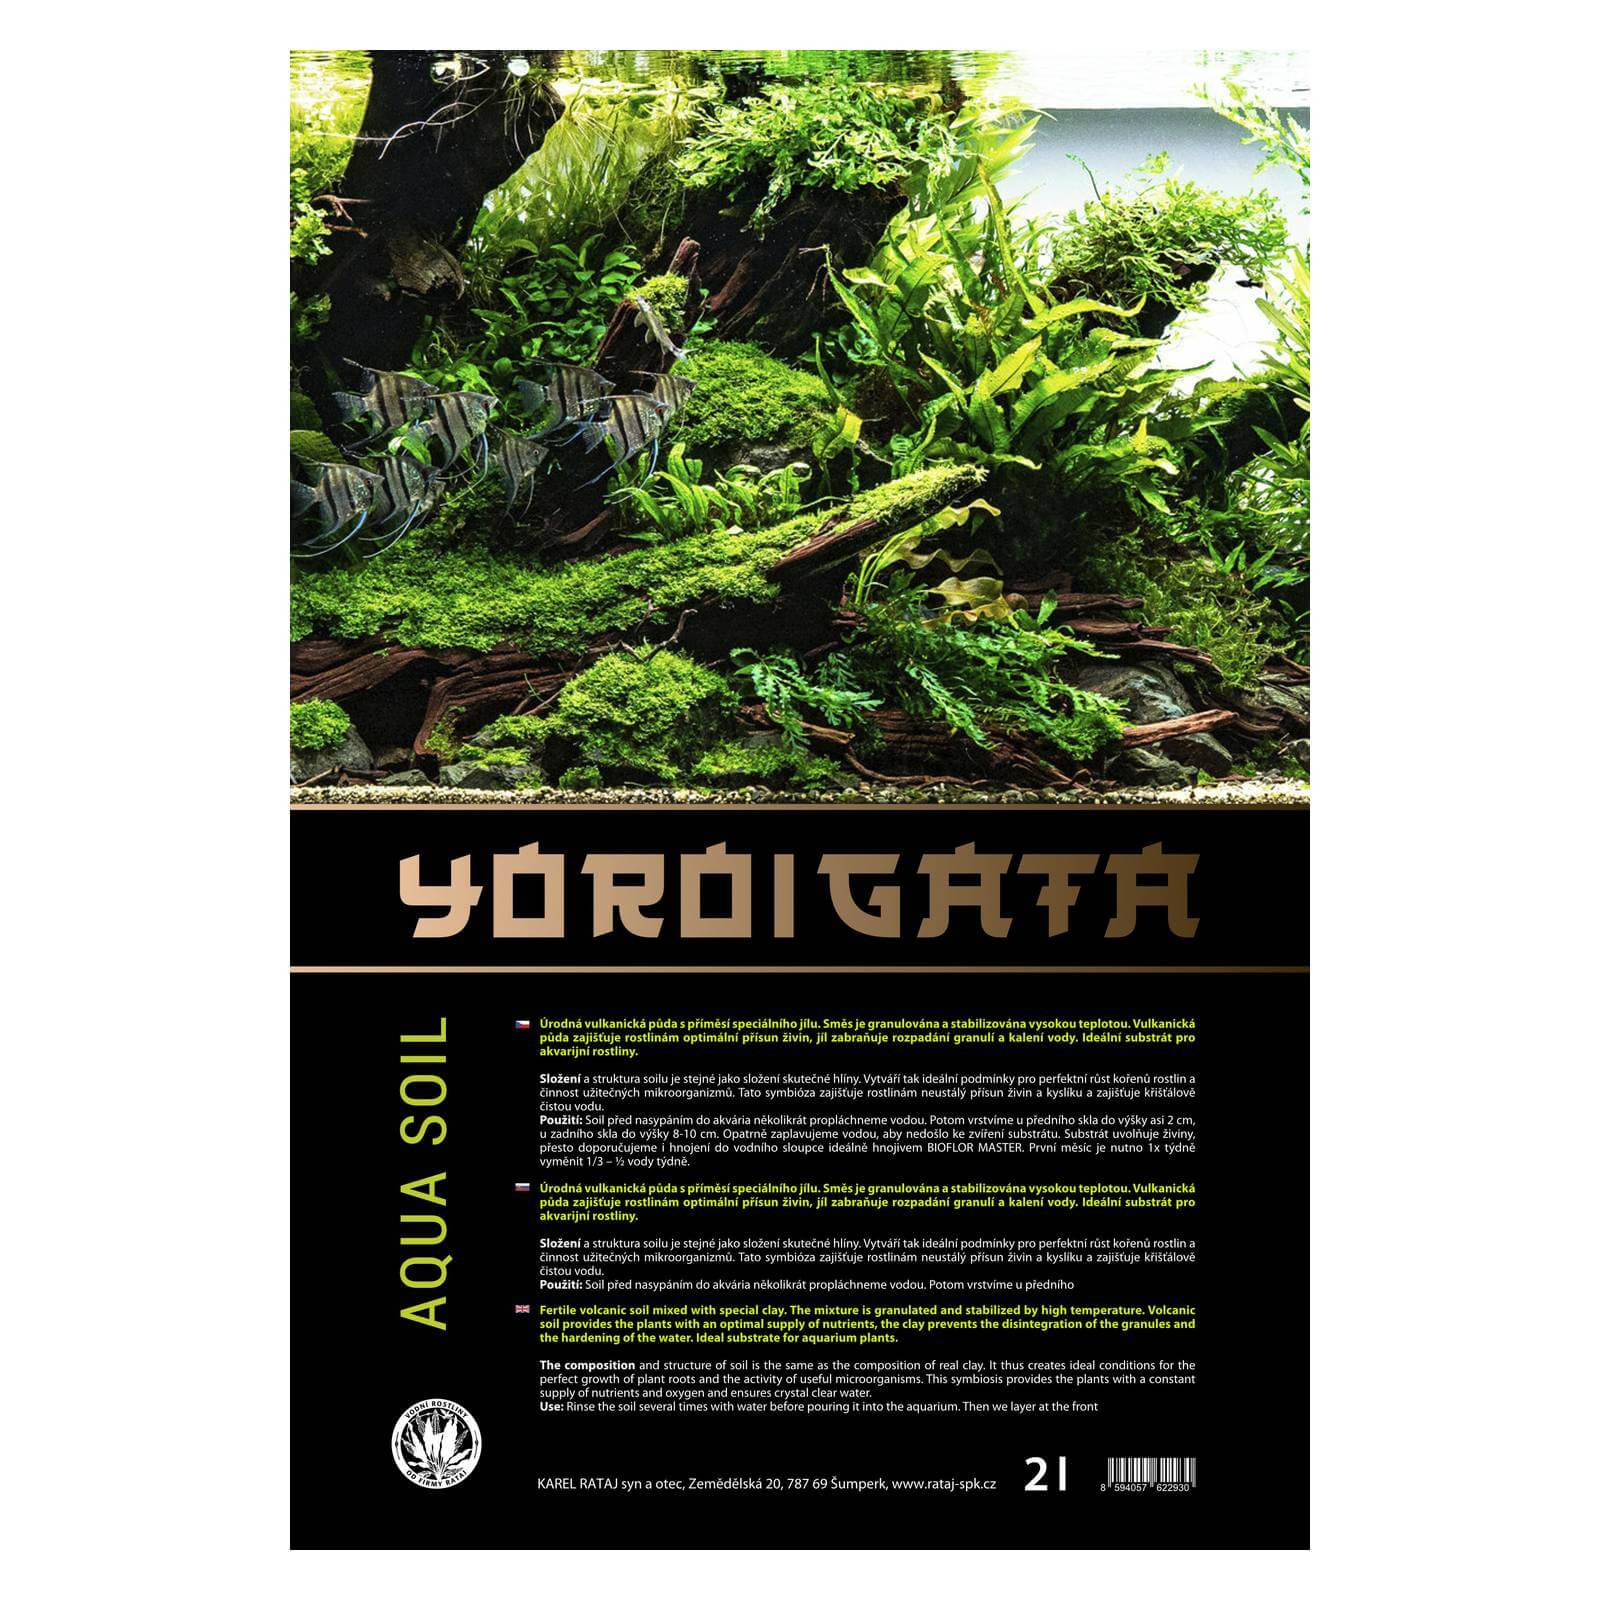 YOROIGATA aquatic soil 8l